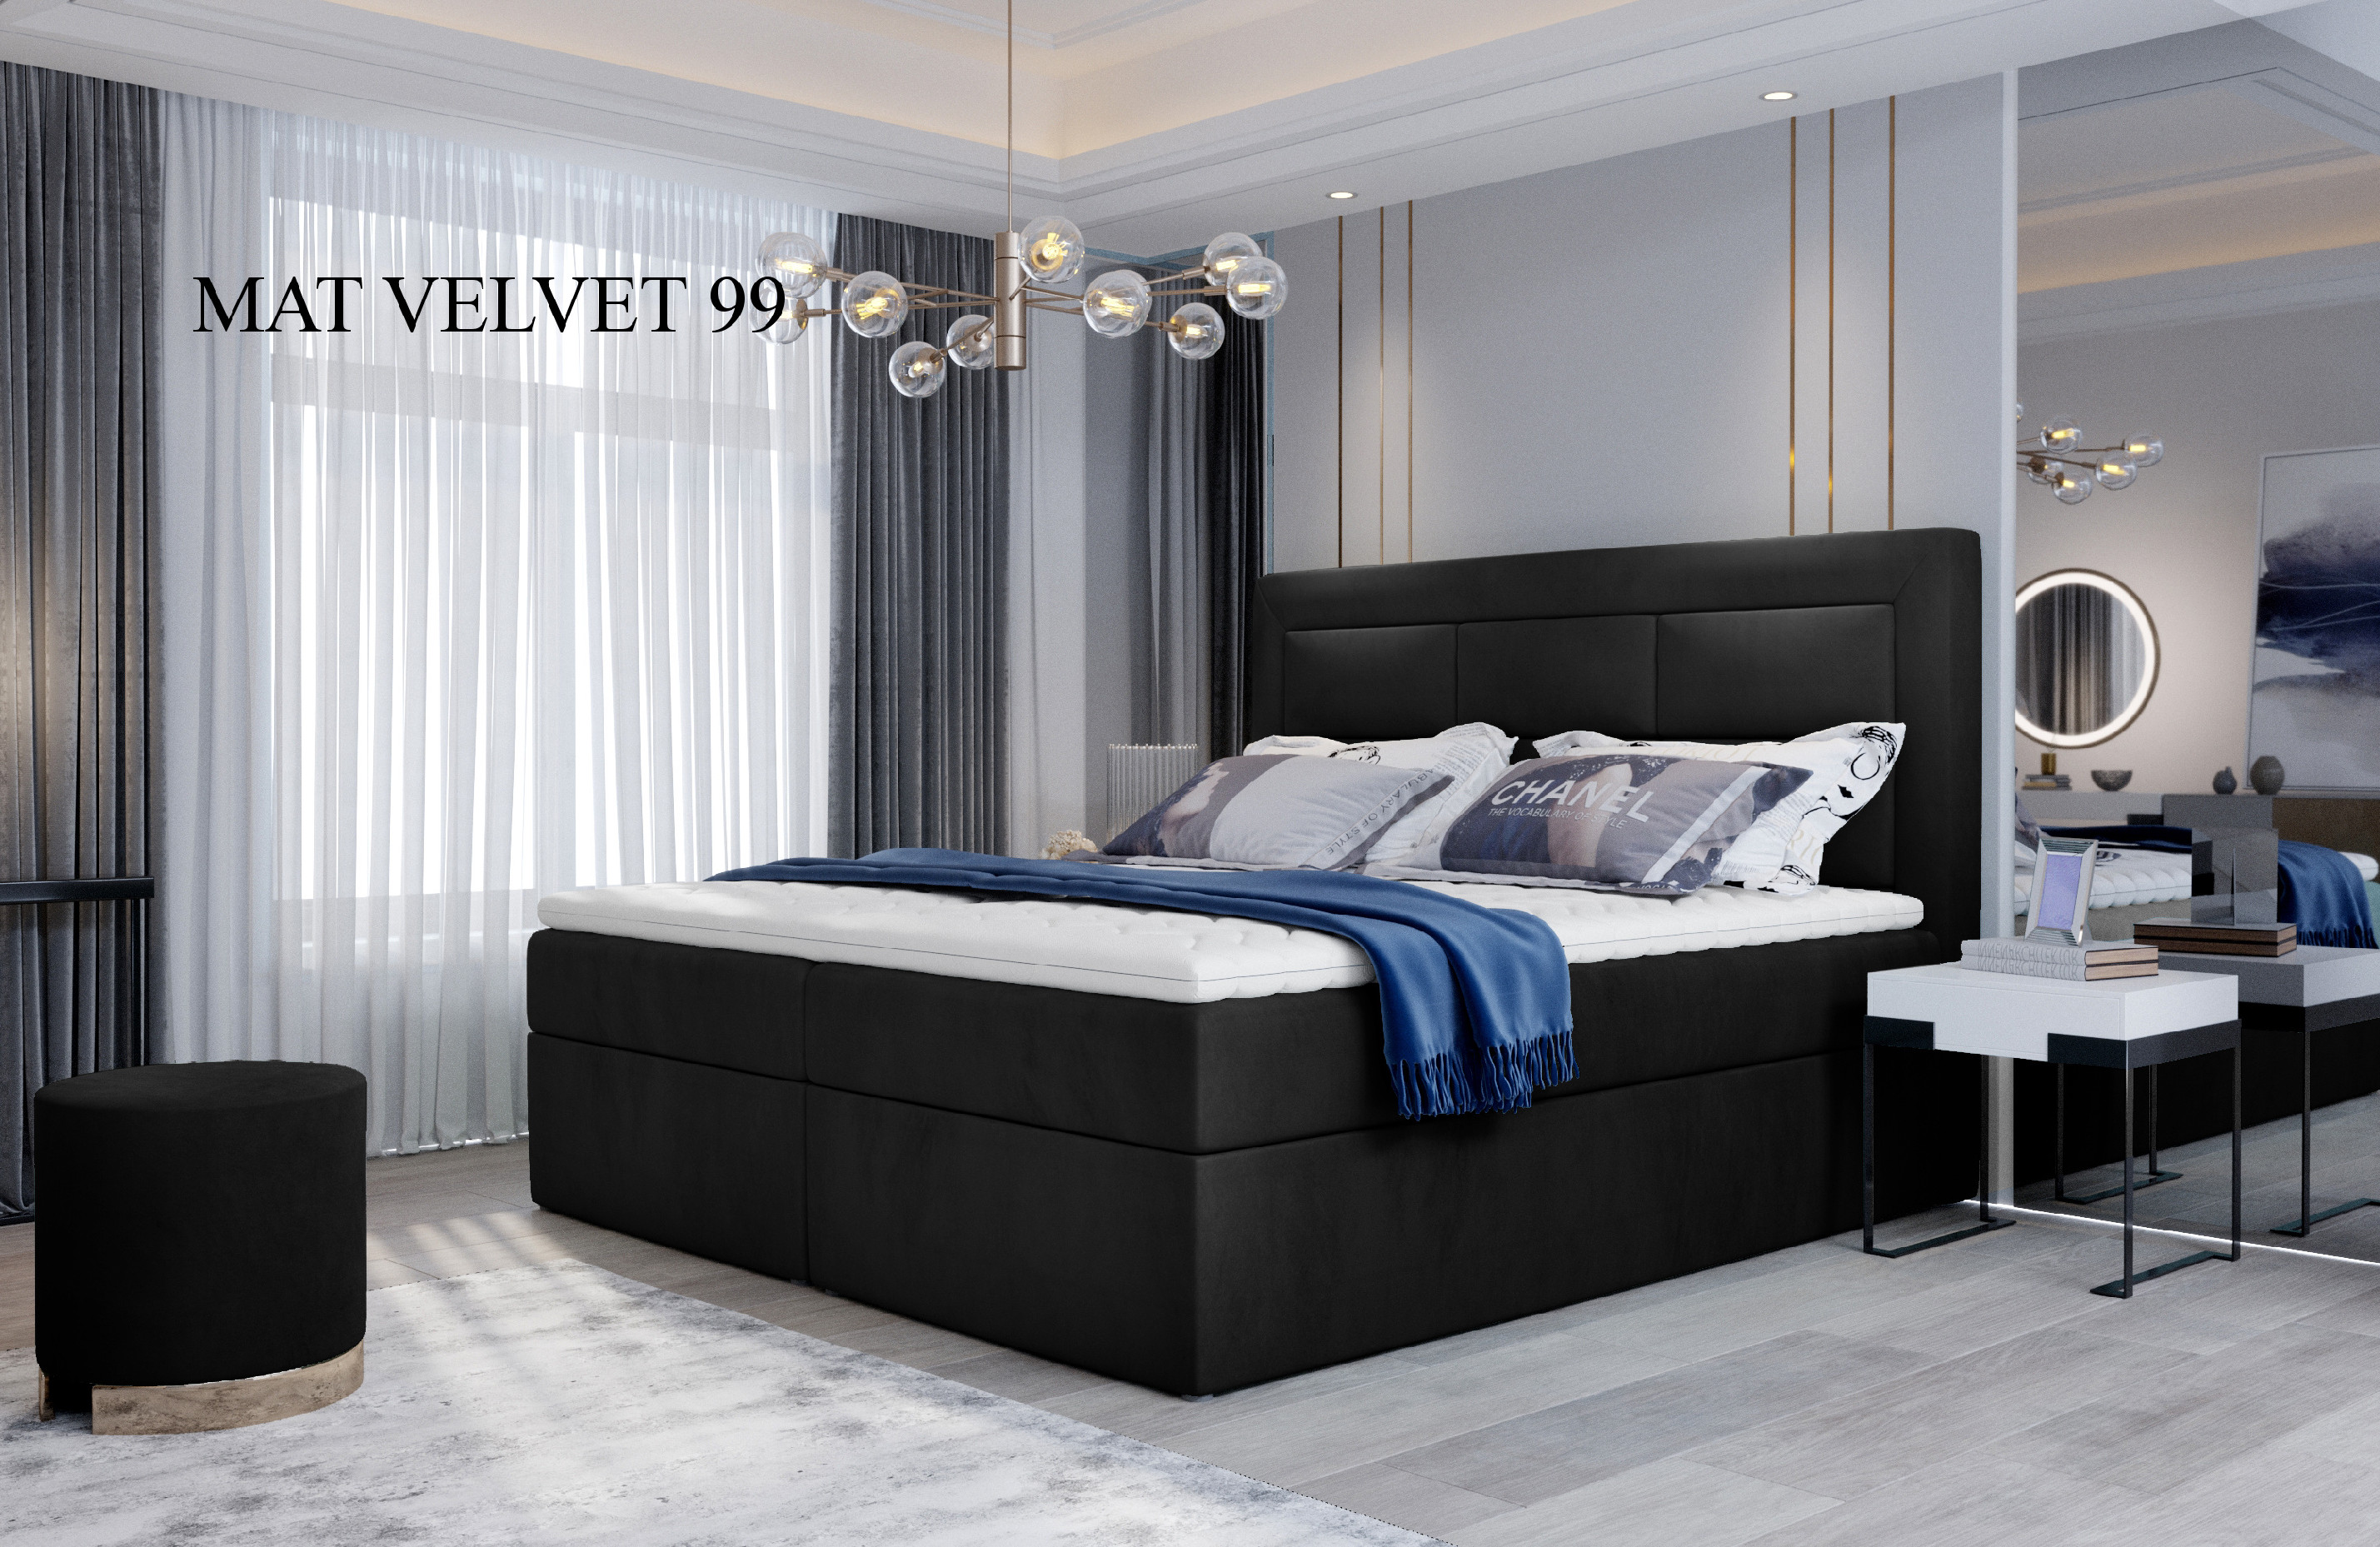 Čalouněná postel VIVRE Boxsprings 180 x 200 cm Provedení: Mat Velvet 99